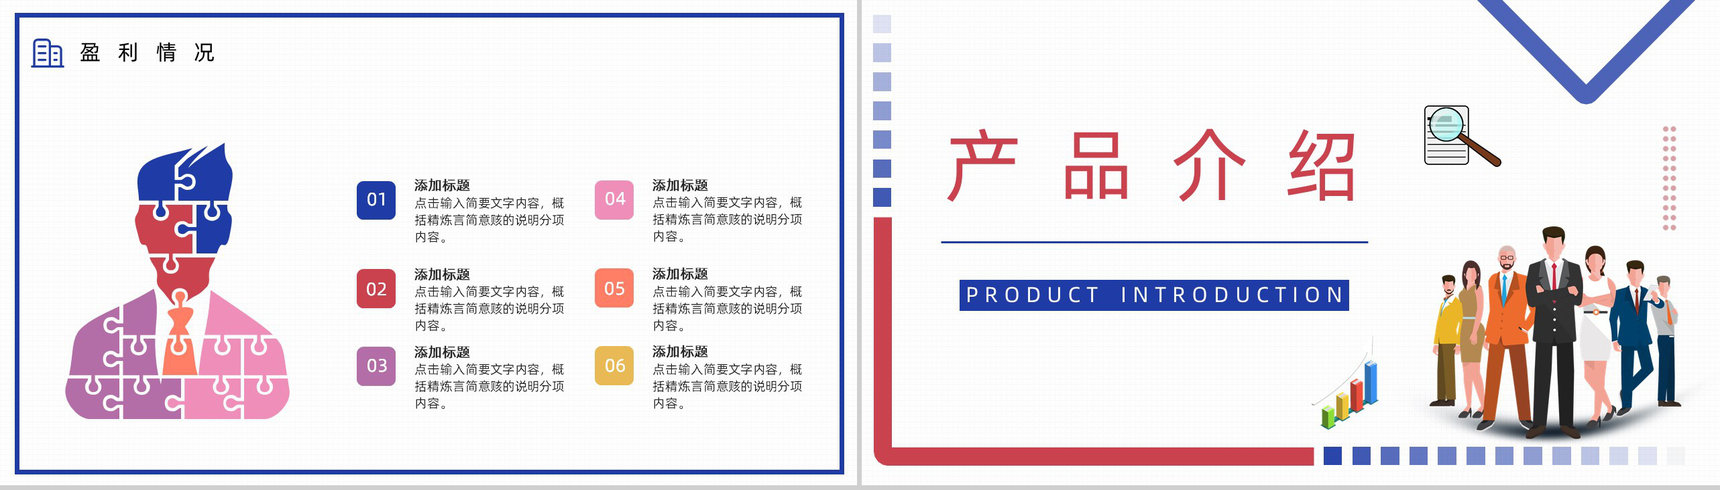 浅紫色简约动画企业文化管理理念活动宣传产品介绍PPT通用模板-7